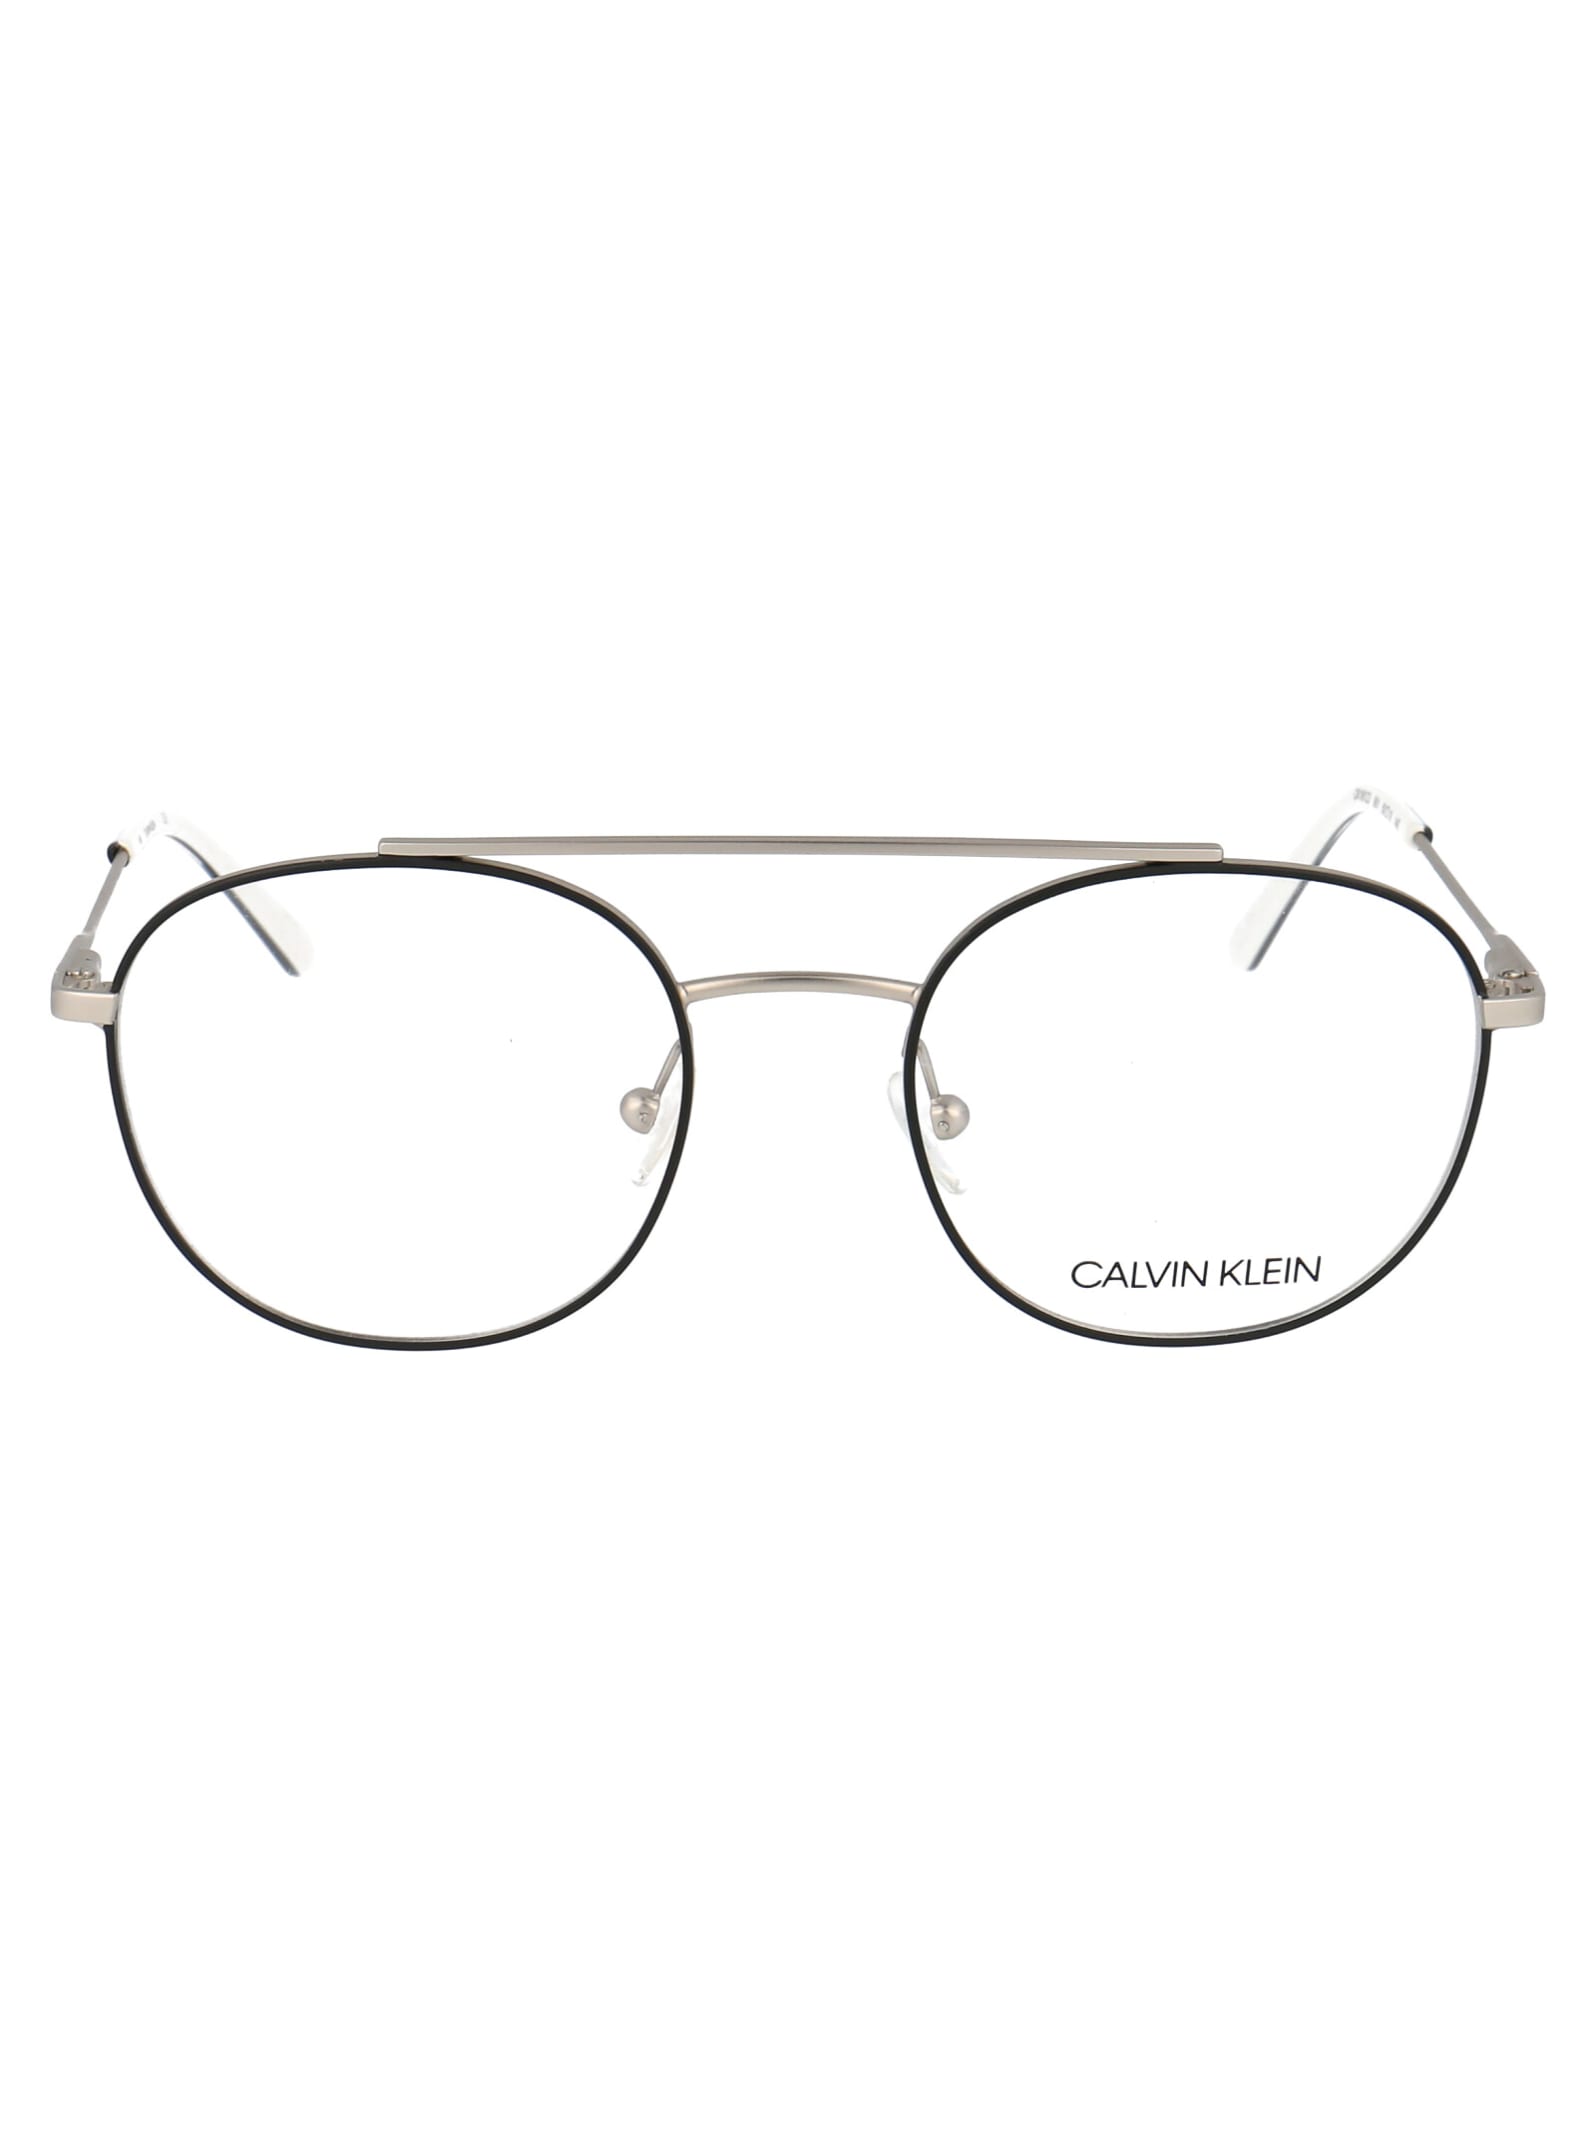 Calvin Klein Ck18123 Glasses In 001 Satin Black